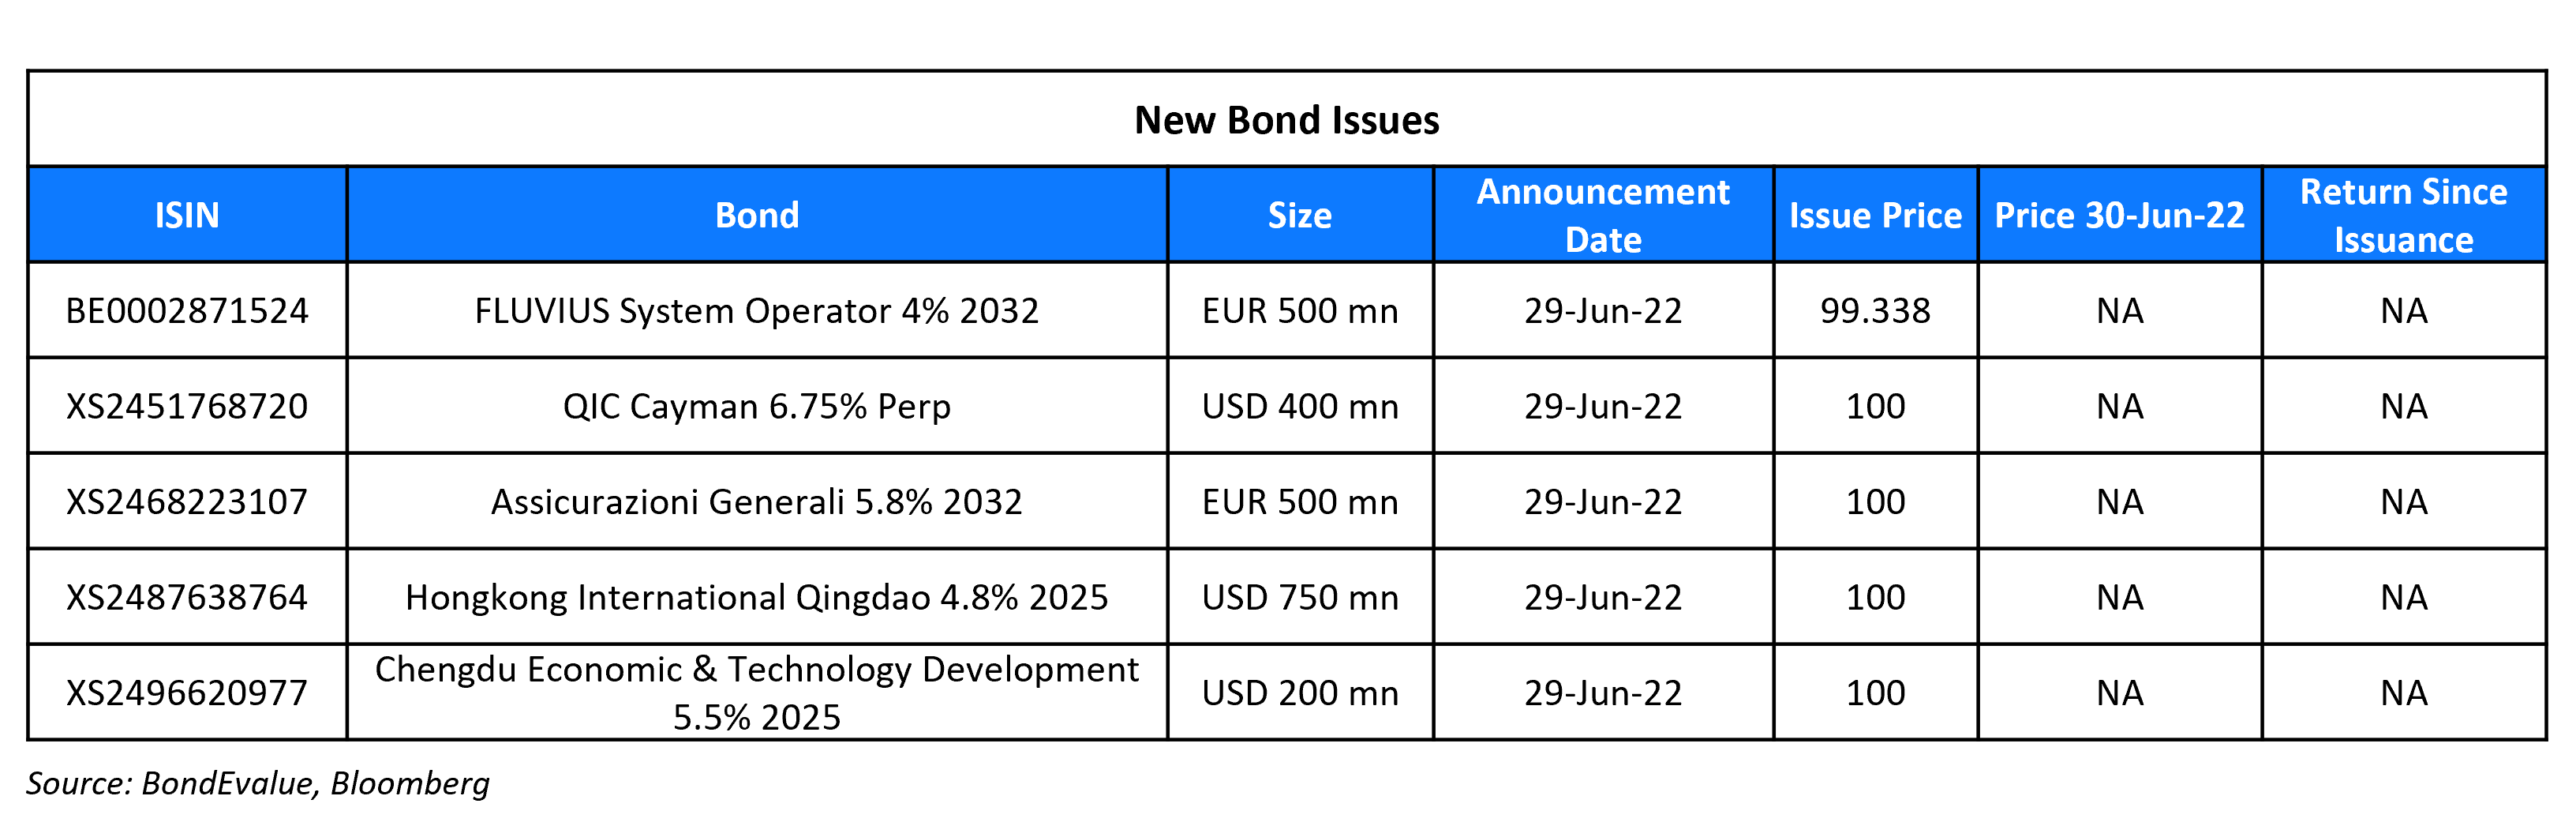 New Bond Issues 30 Jun 22